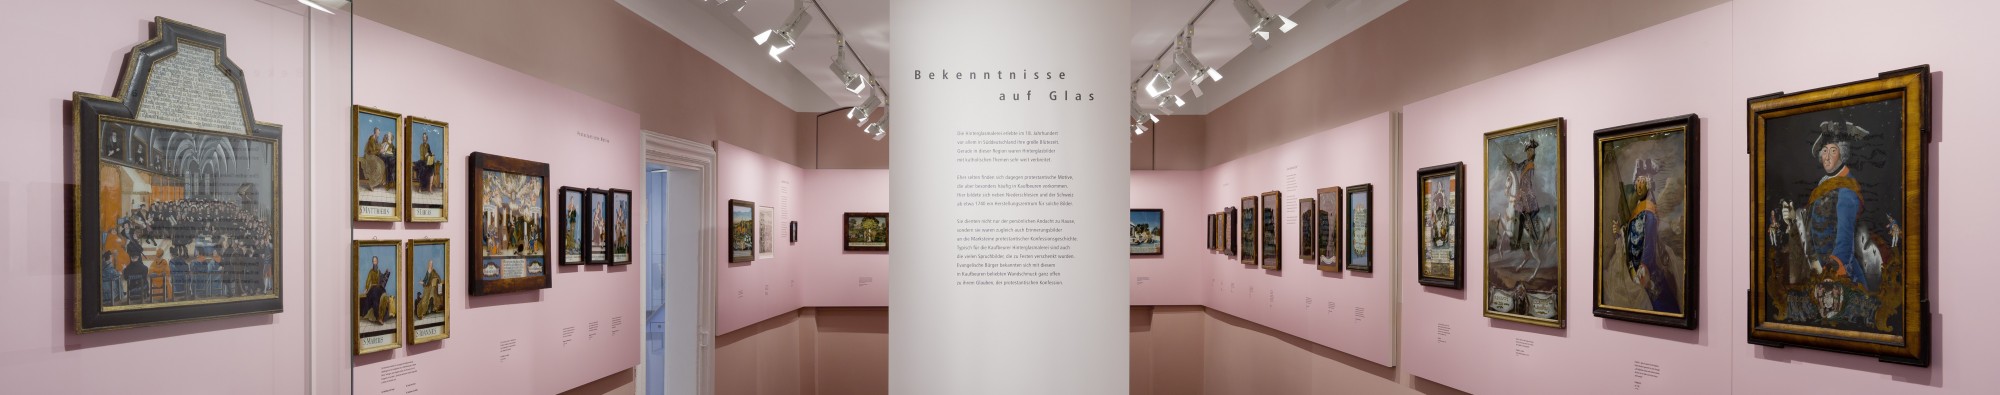 Blick in den Raum der Hinterglasbilder: rechts und links Hinterglasbilder an der Wand, in der Mitte ein Ausstellungstext.